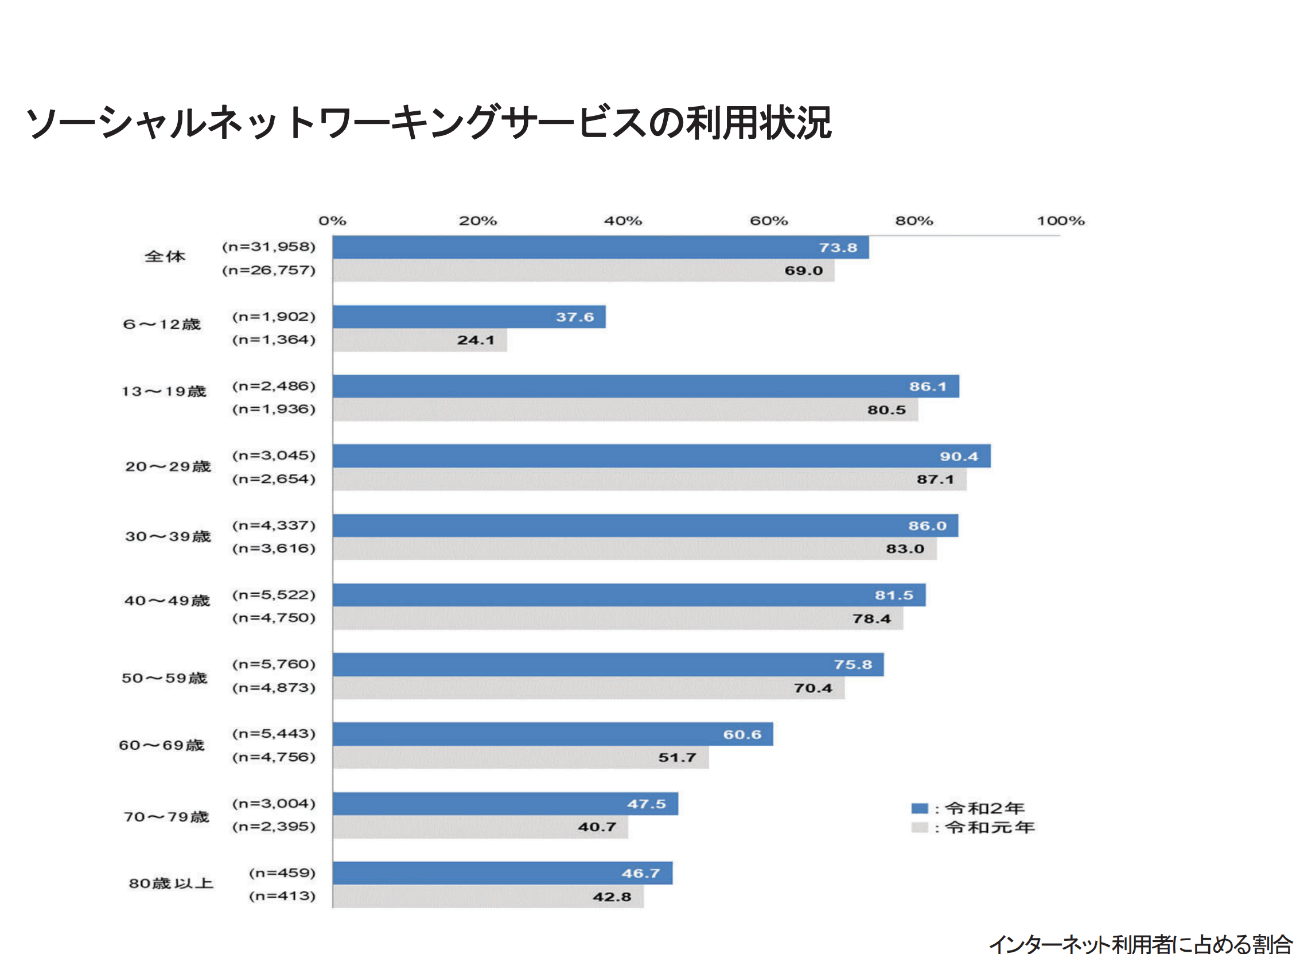 最新Excel配布中】日本・世界のSNSユーザー数まとめ(Facebook,Twitter,Instagram,YouTube,LINE,TikTok)